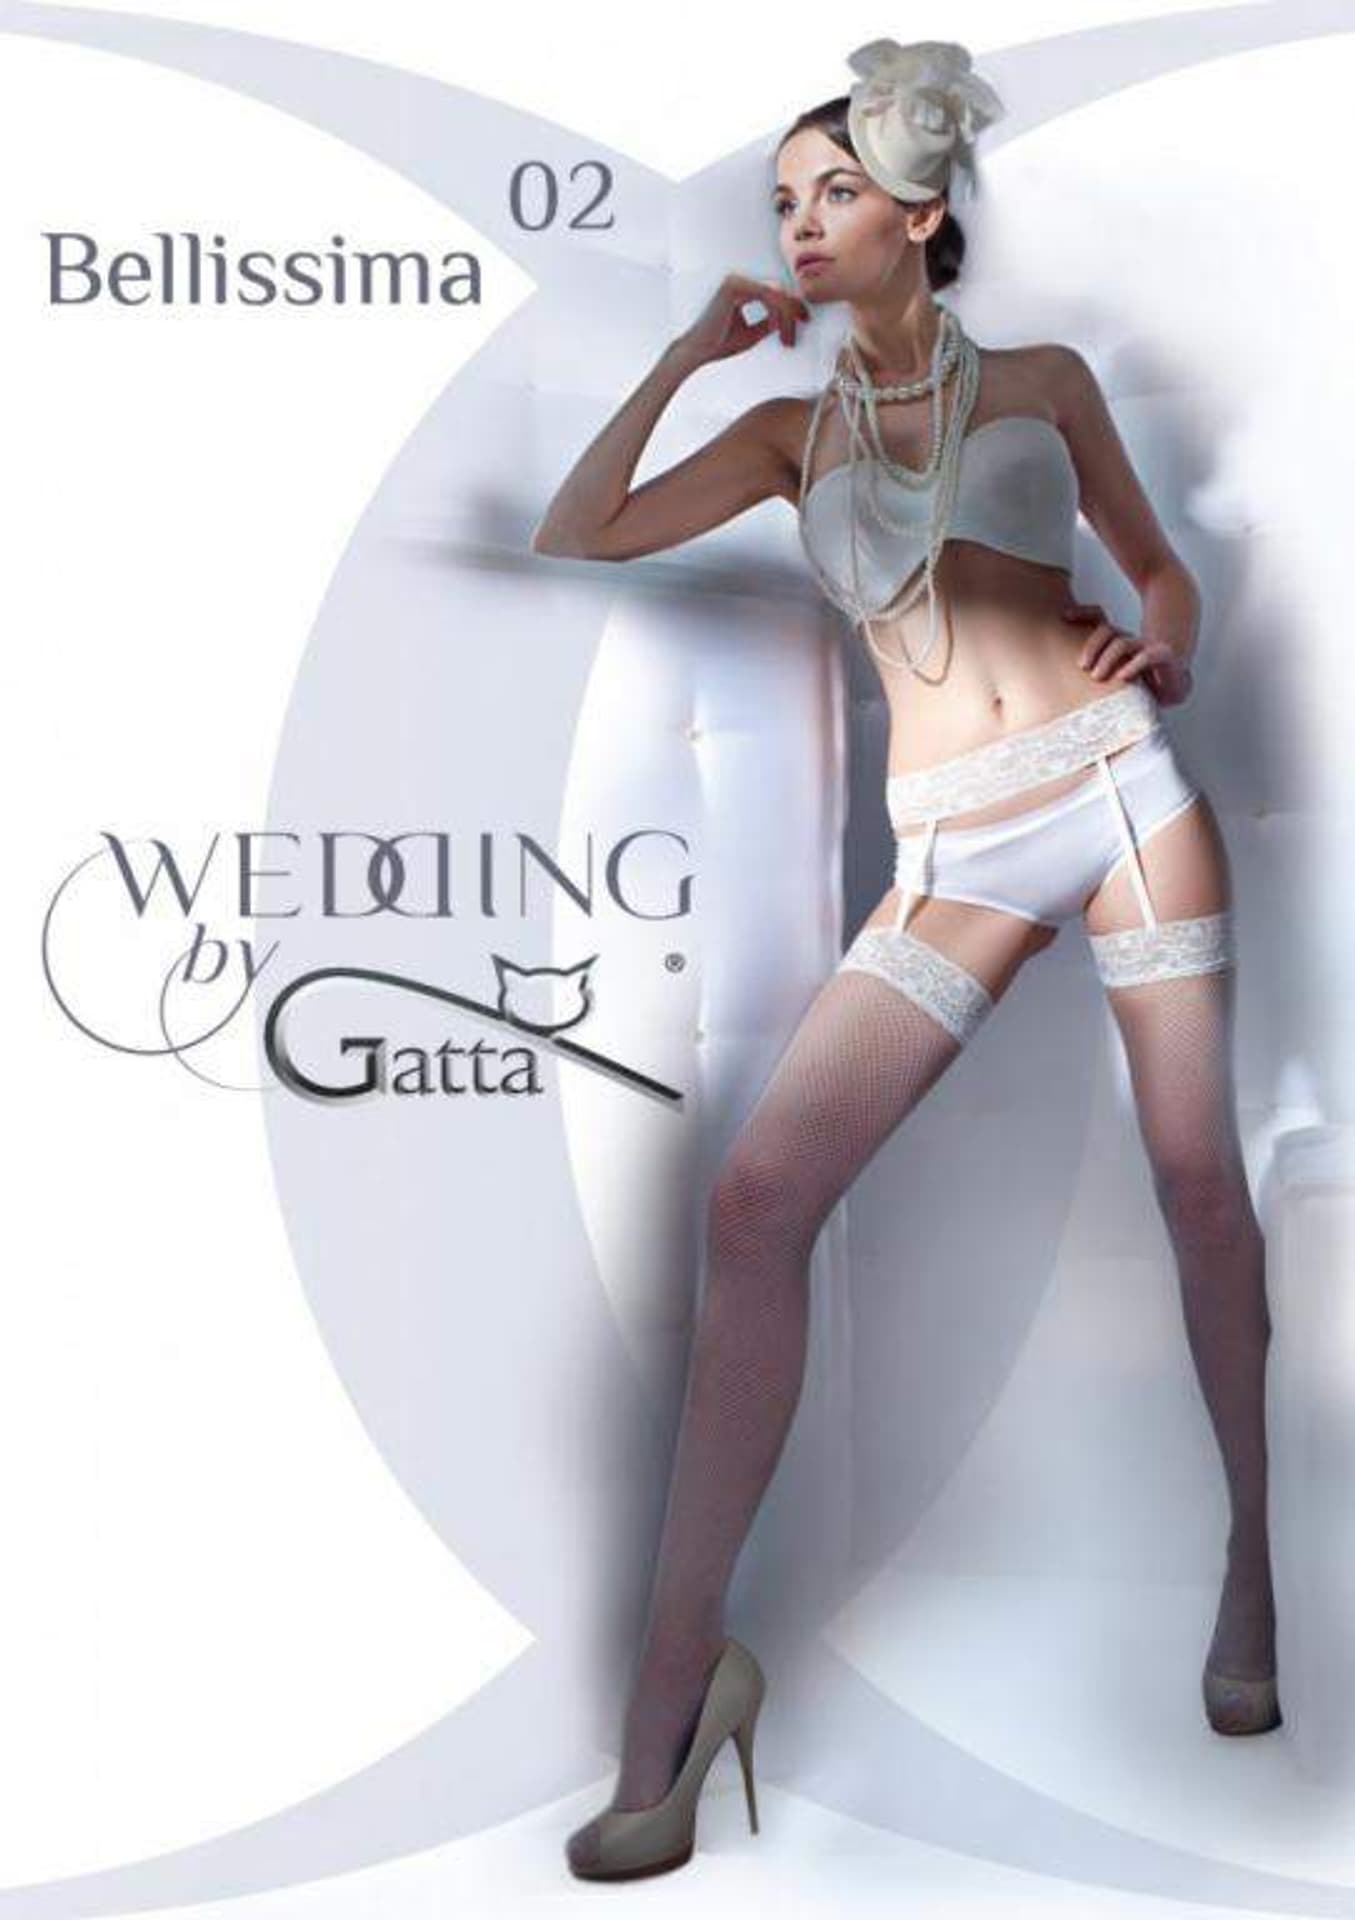 POŃCZOCHY GATTA WEDDING BELLISSIMA WZ 02 (kolor bianco, rozmiar 1/2)